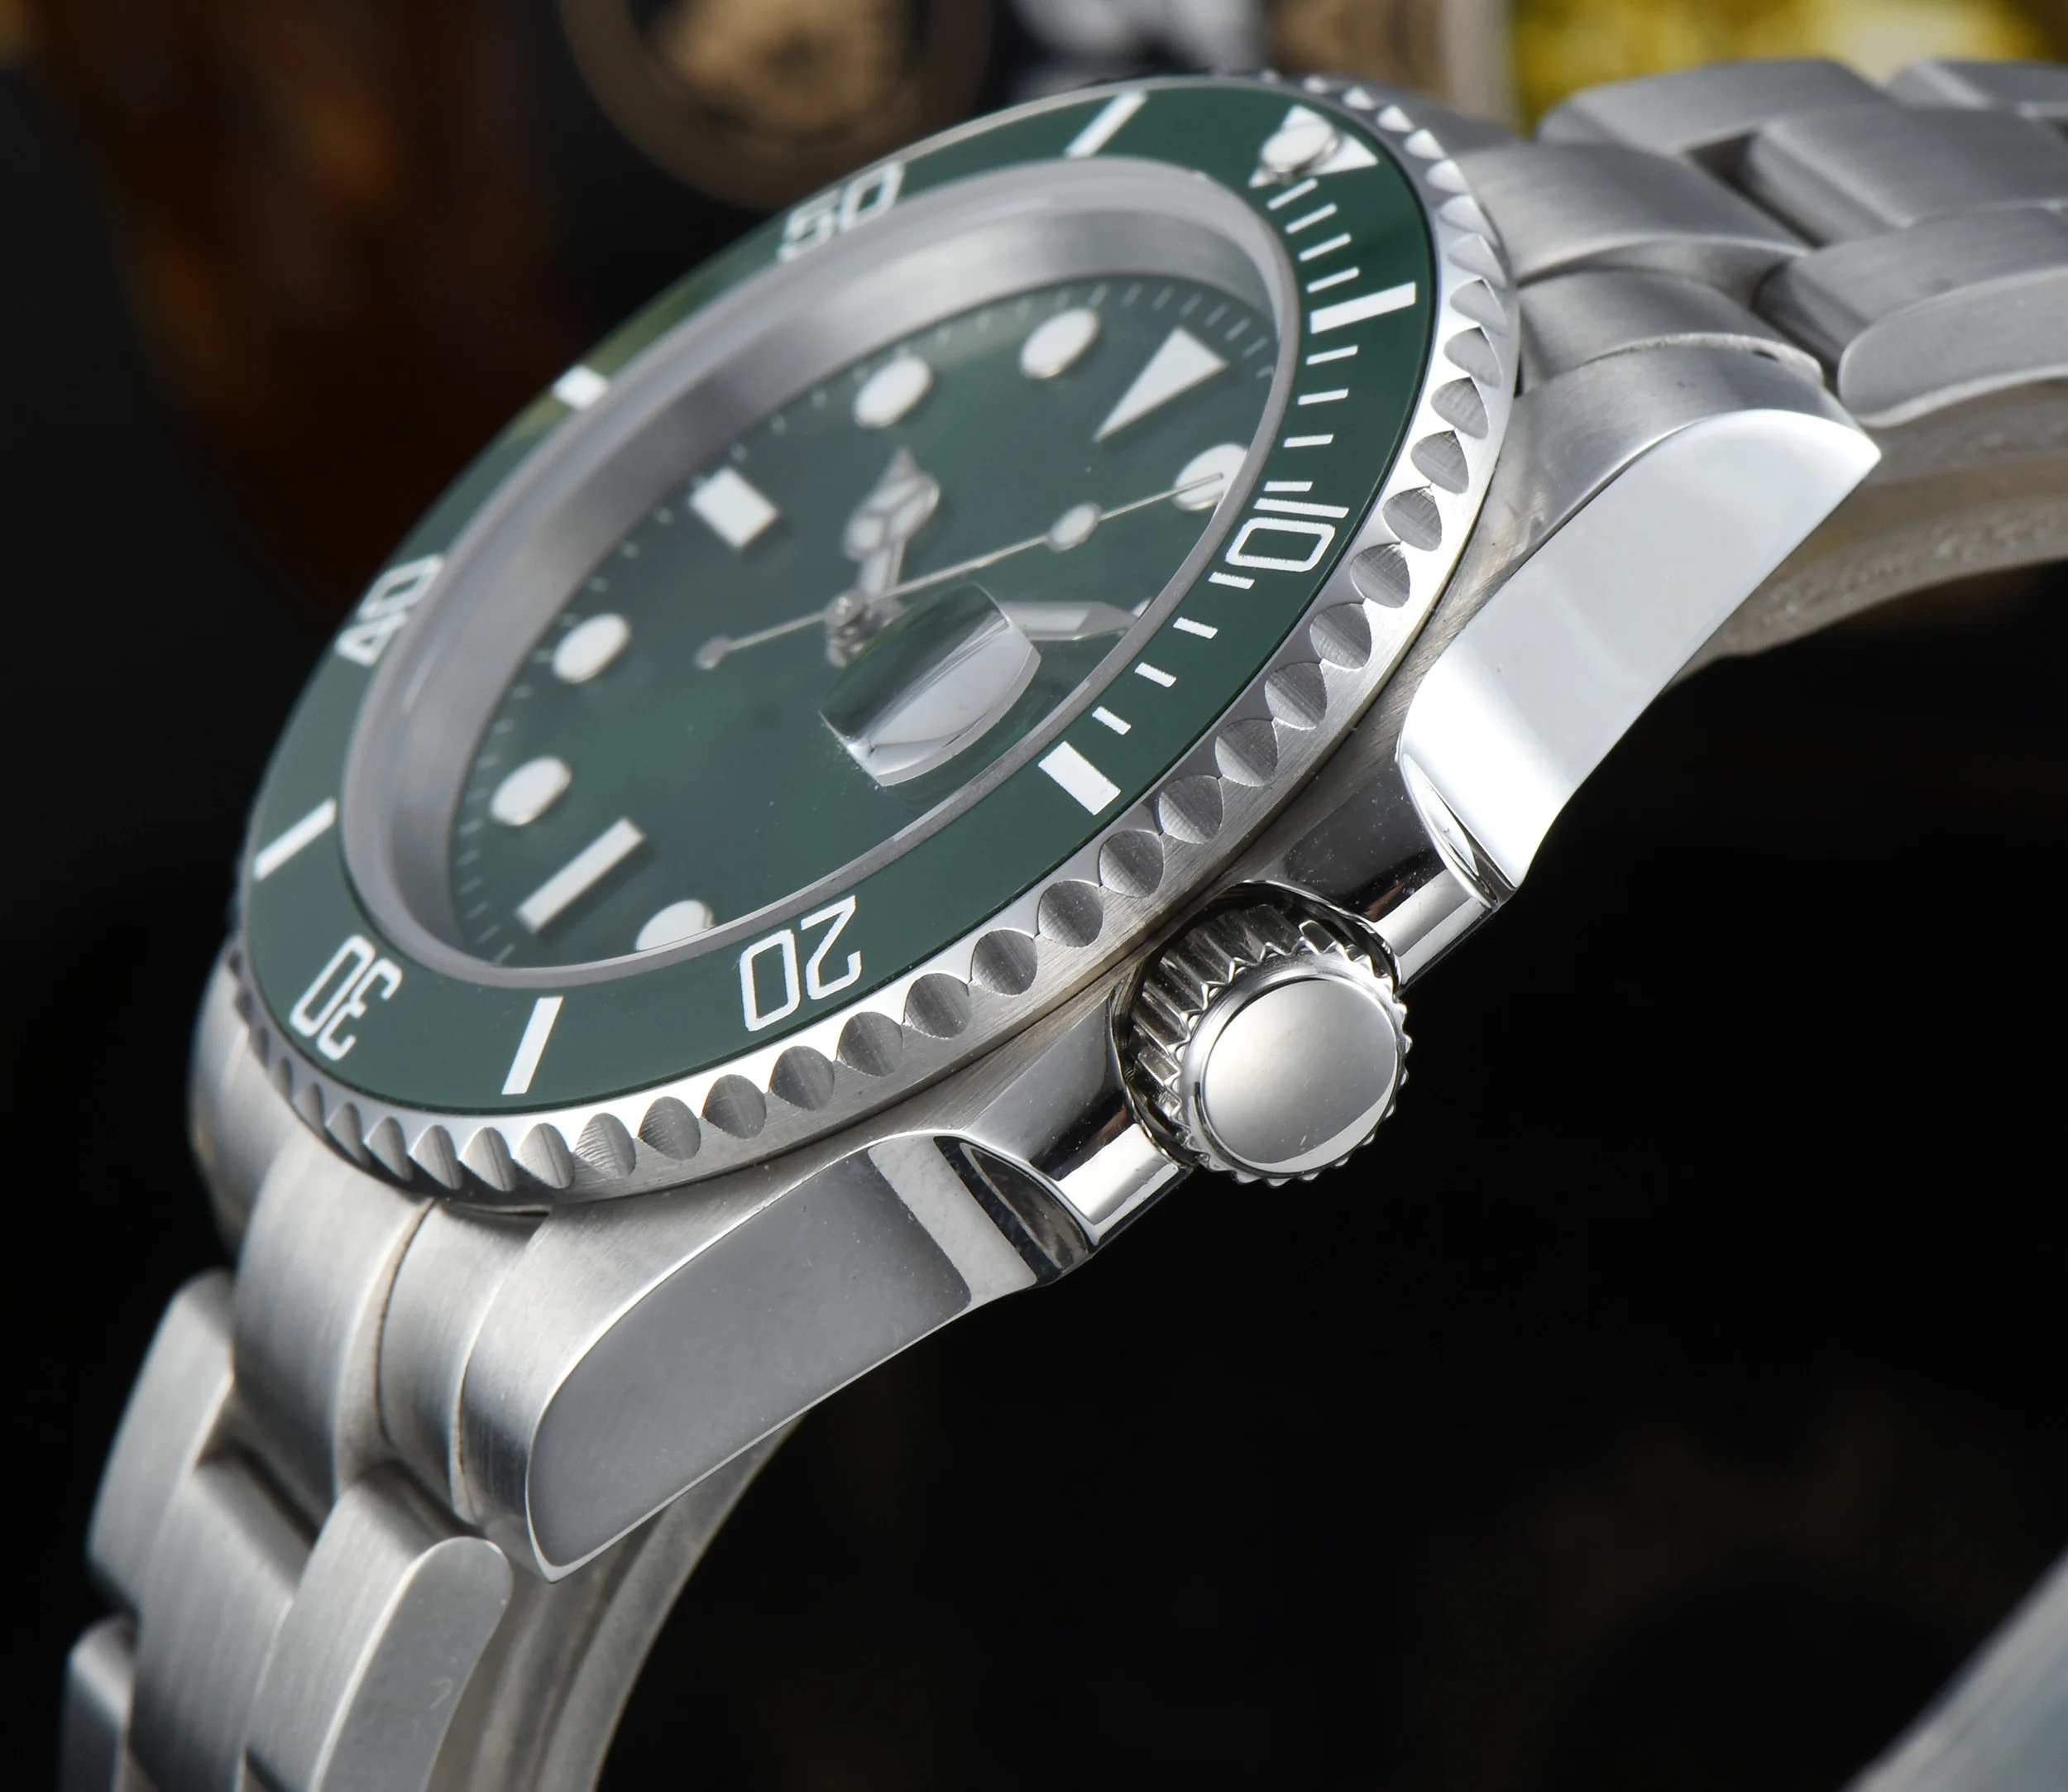 АВТОМАТИЧЕСКИЕ новые 40 мм Мужские часы с зеленым циферблатом, сапфировое стекло, светящаяся Дата, Полная регулировка, нержавеющая сталь, Автоматический ход, Мужские t R6